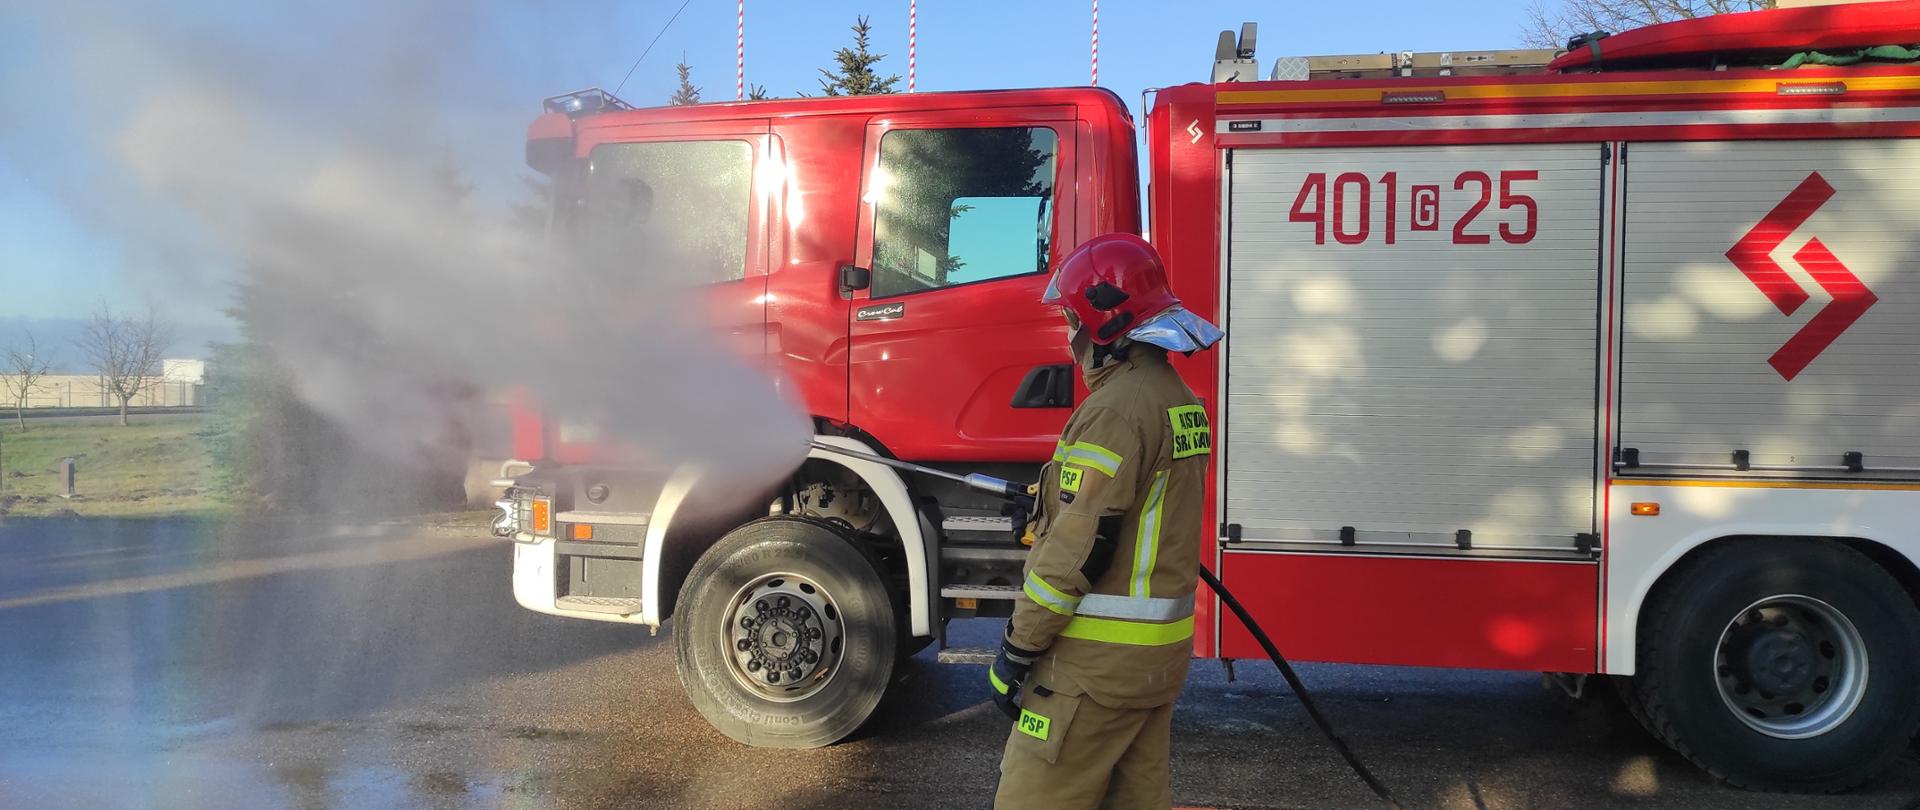 Na zdjęciu znajduje się strażak w czerwonym hełmie w umundurowaniu specjalnym koloru musztardowego, który leje wodę przy wykorzystaniu lancy gaśniczej. Za strazakiem ustawiony jest samochód ratowniczo-gaśniczy.